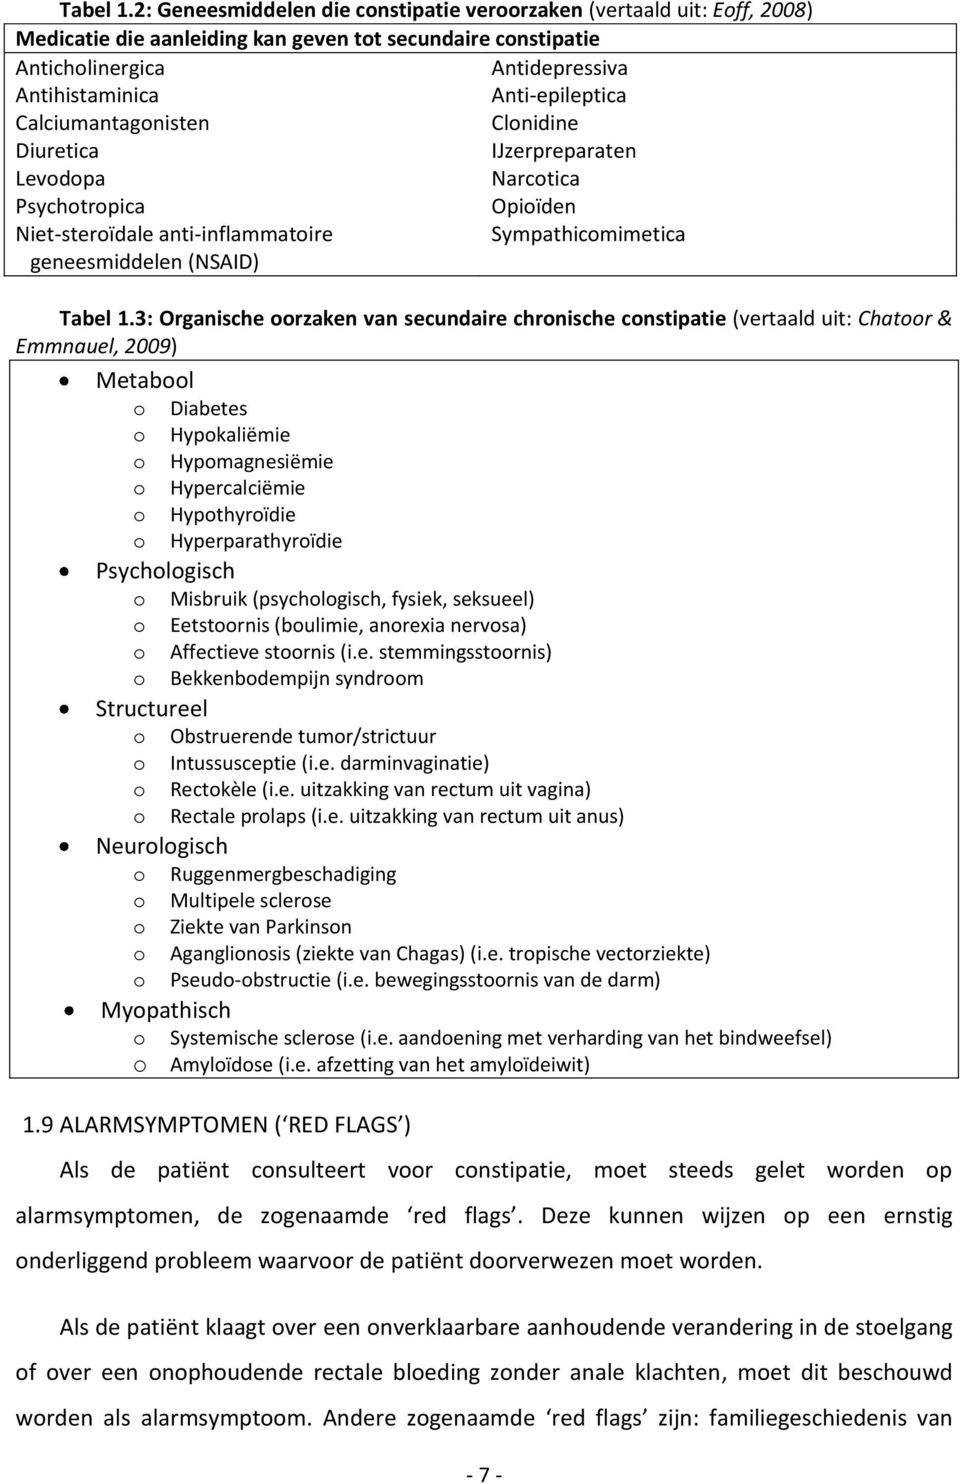 Calciumantagonisten Clonidine Diuretica IJzerpreparaten Levodopa Narcotica Psychotropica Opioïden Niet-steroïdale anti-inflammatoire Sympathicomimetica geneesmiddelen (NSAID) 3: Organische oorzaken